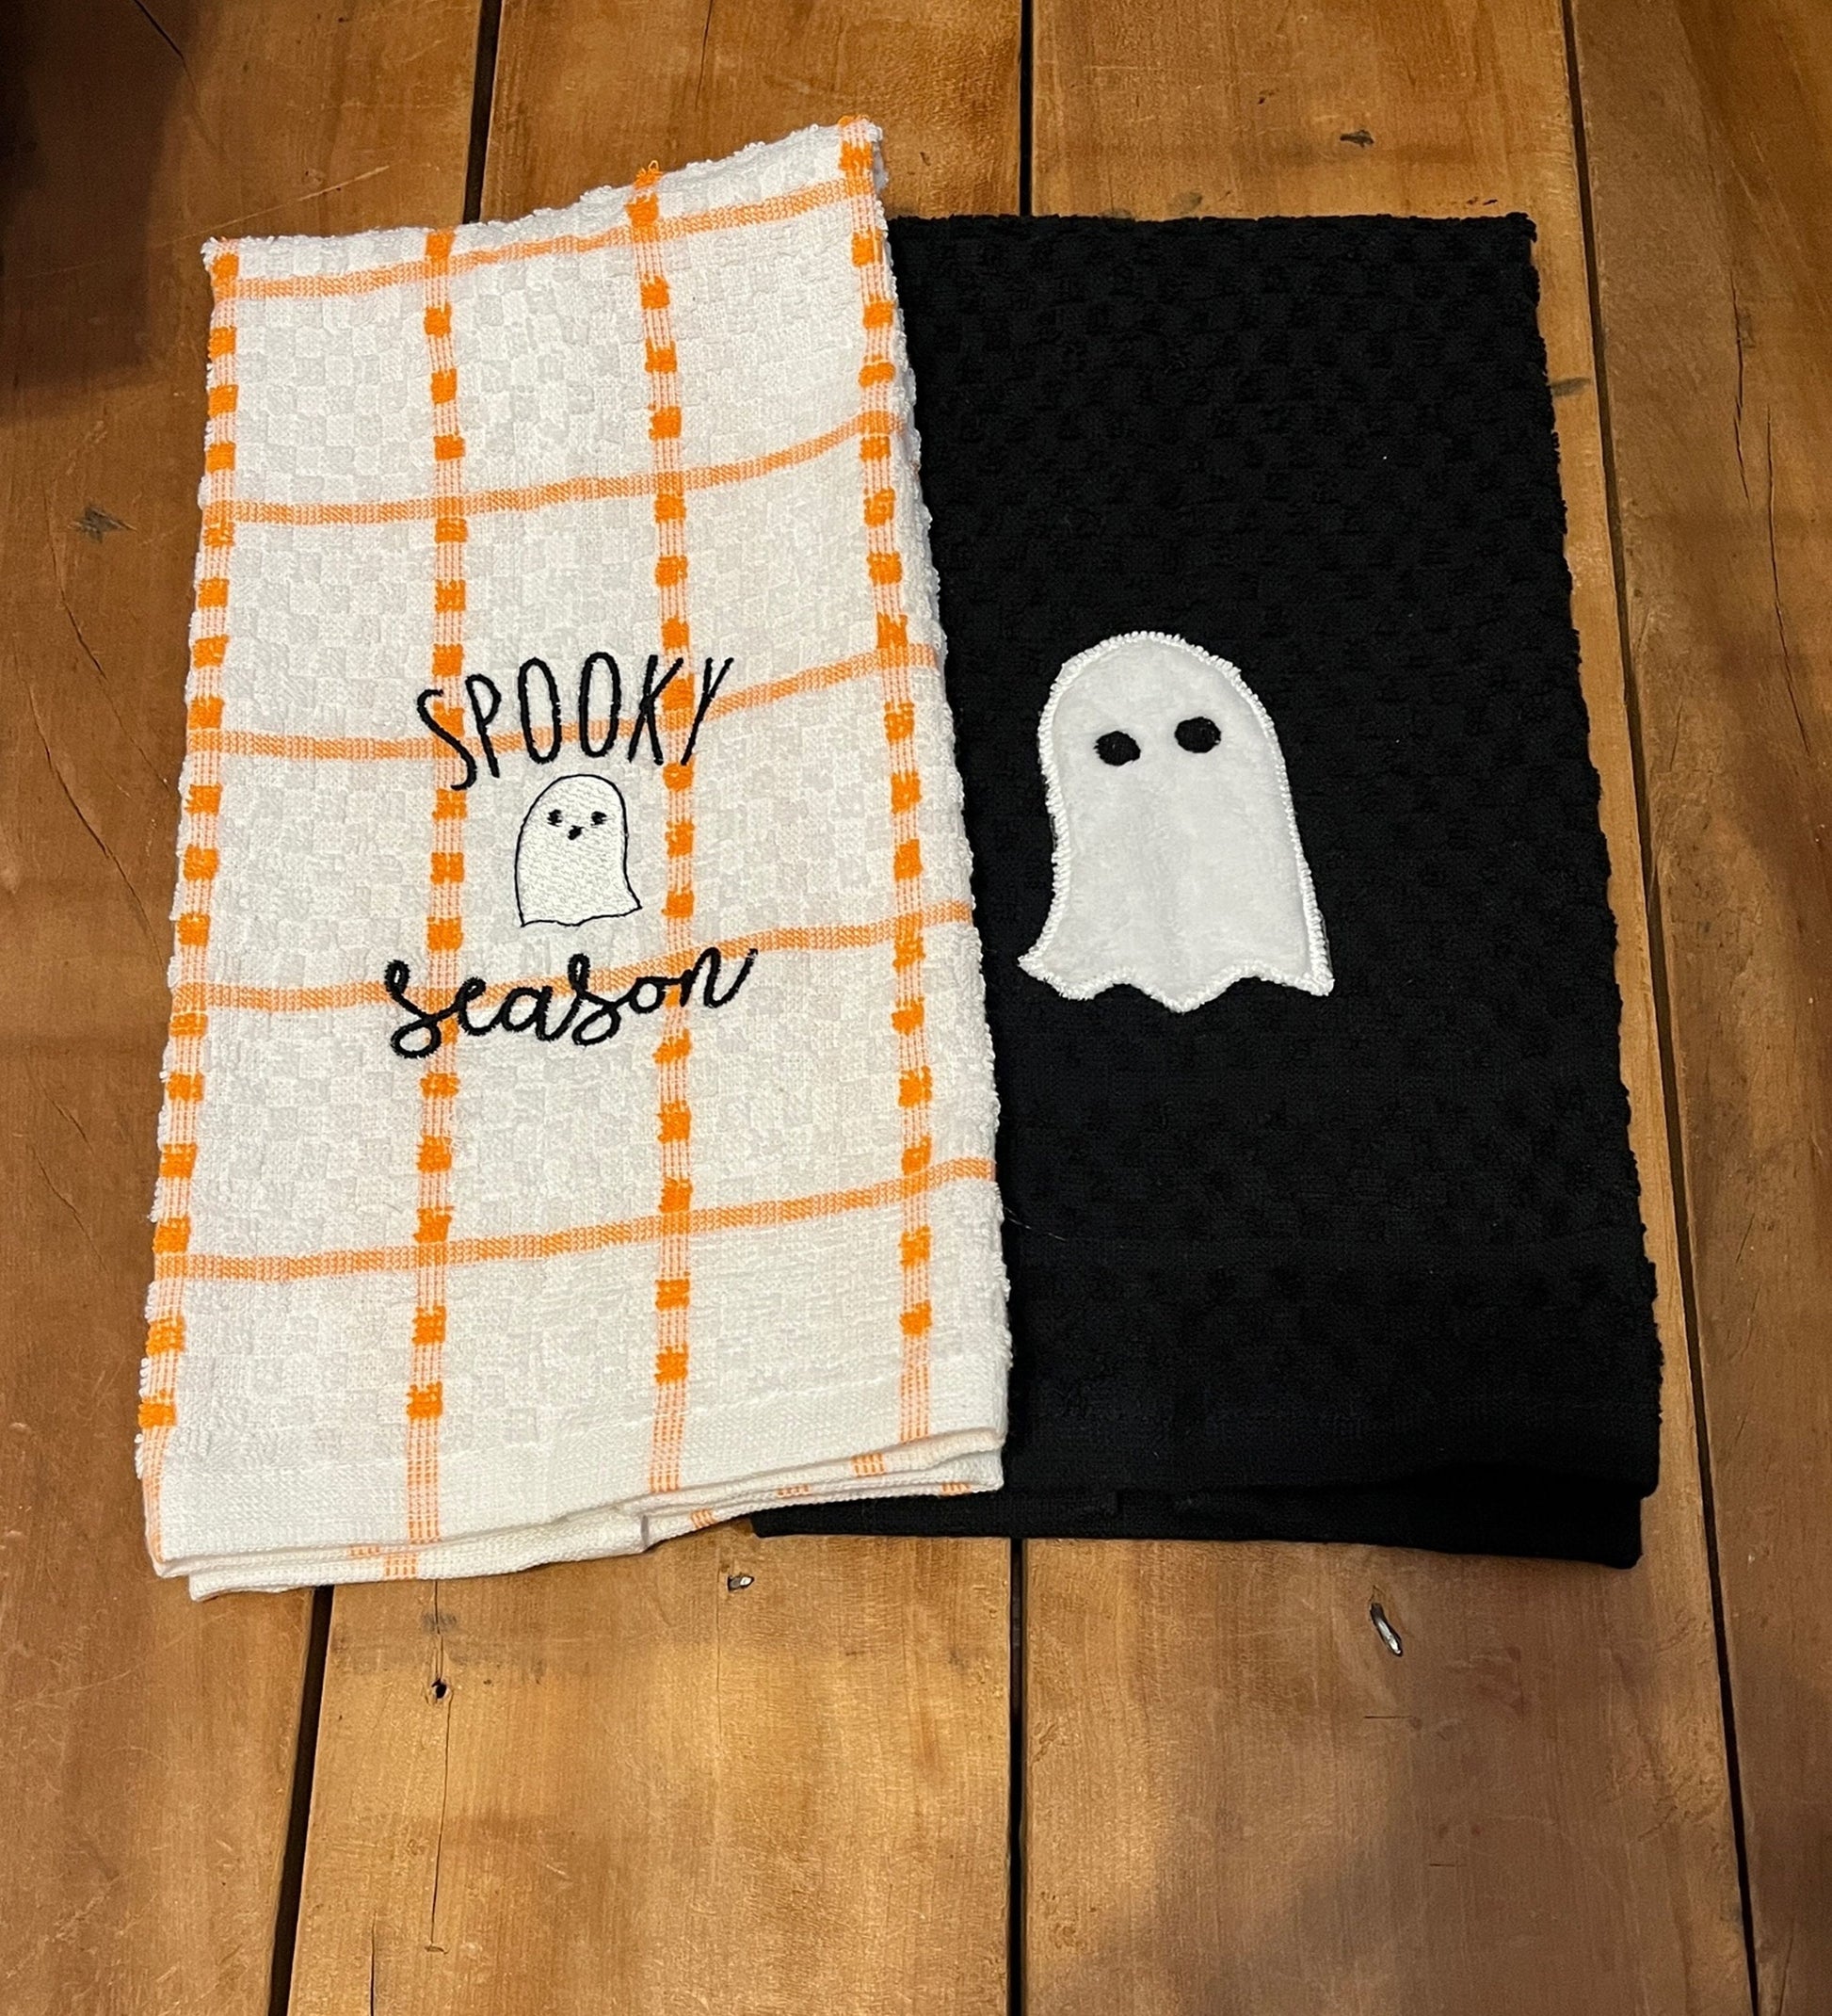 spooky season towel & ghost towel